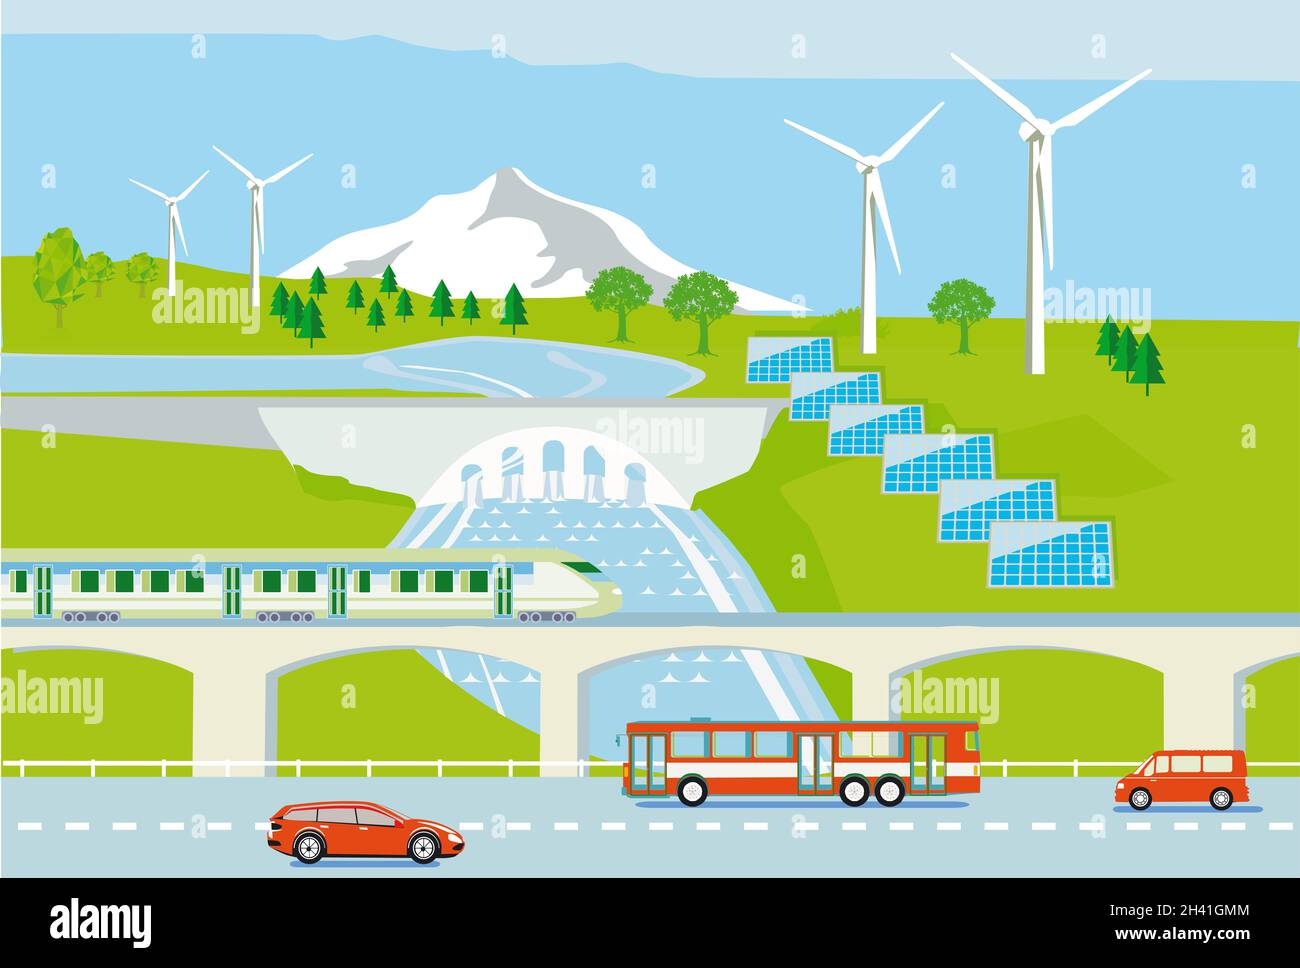 Aerogeneradores, energía hidroeléctrica y solar, con vehículos eléctricos y tren de pasajeros, ilustración Foto de stock